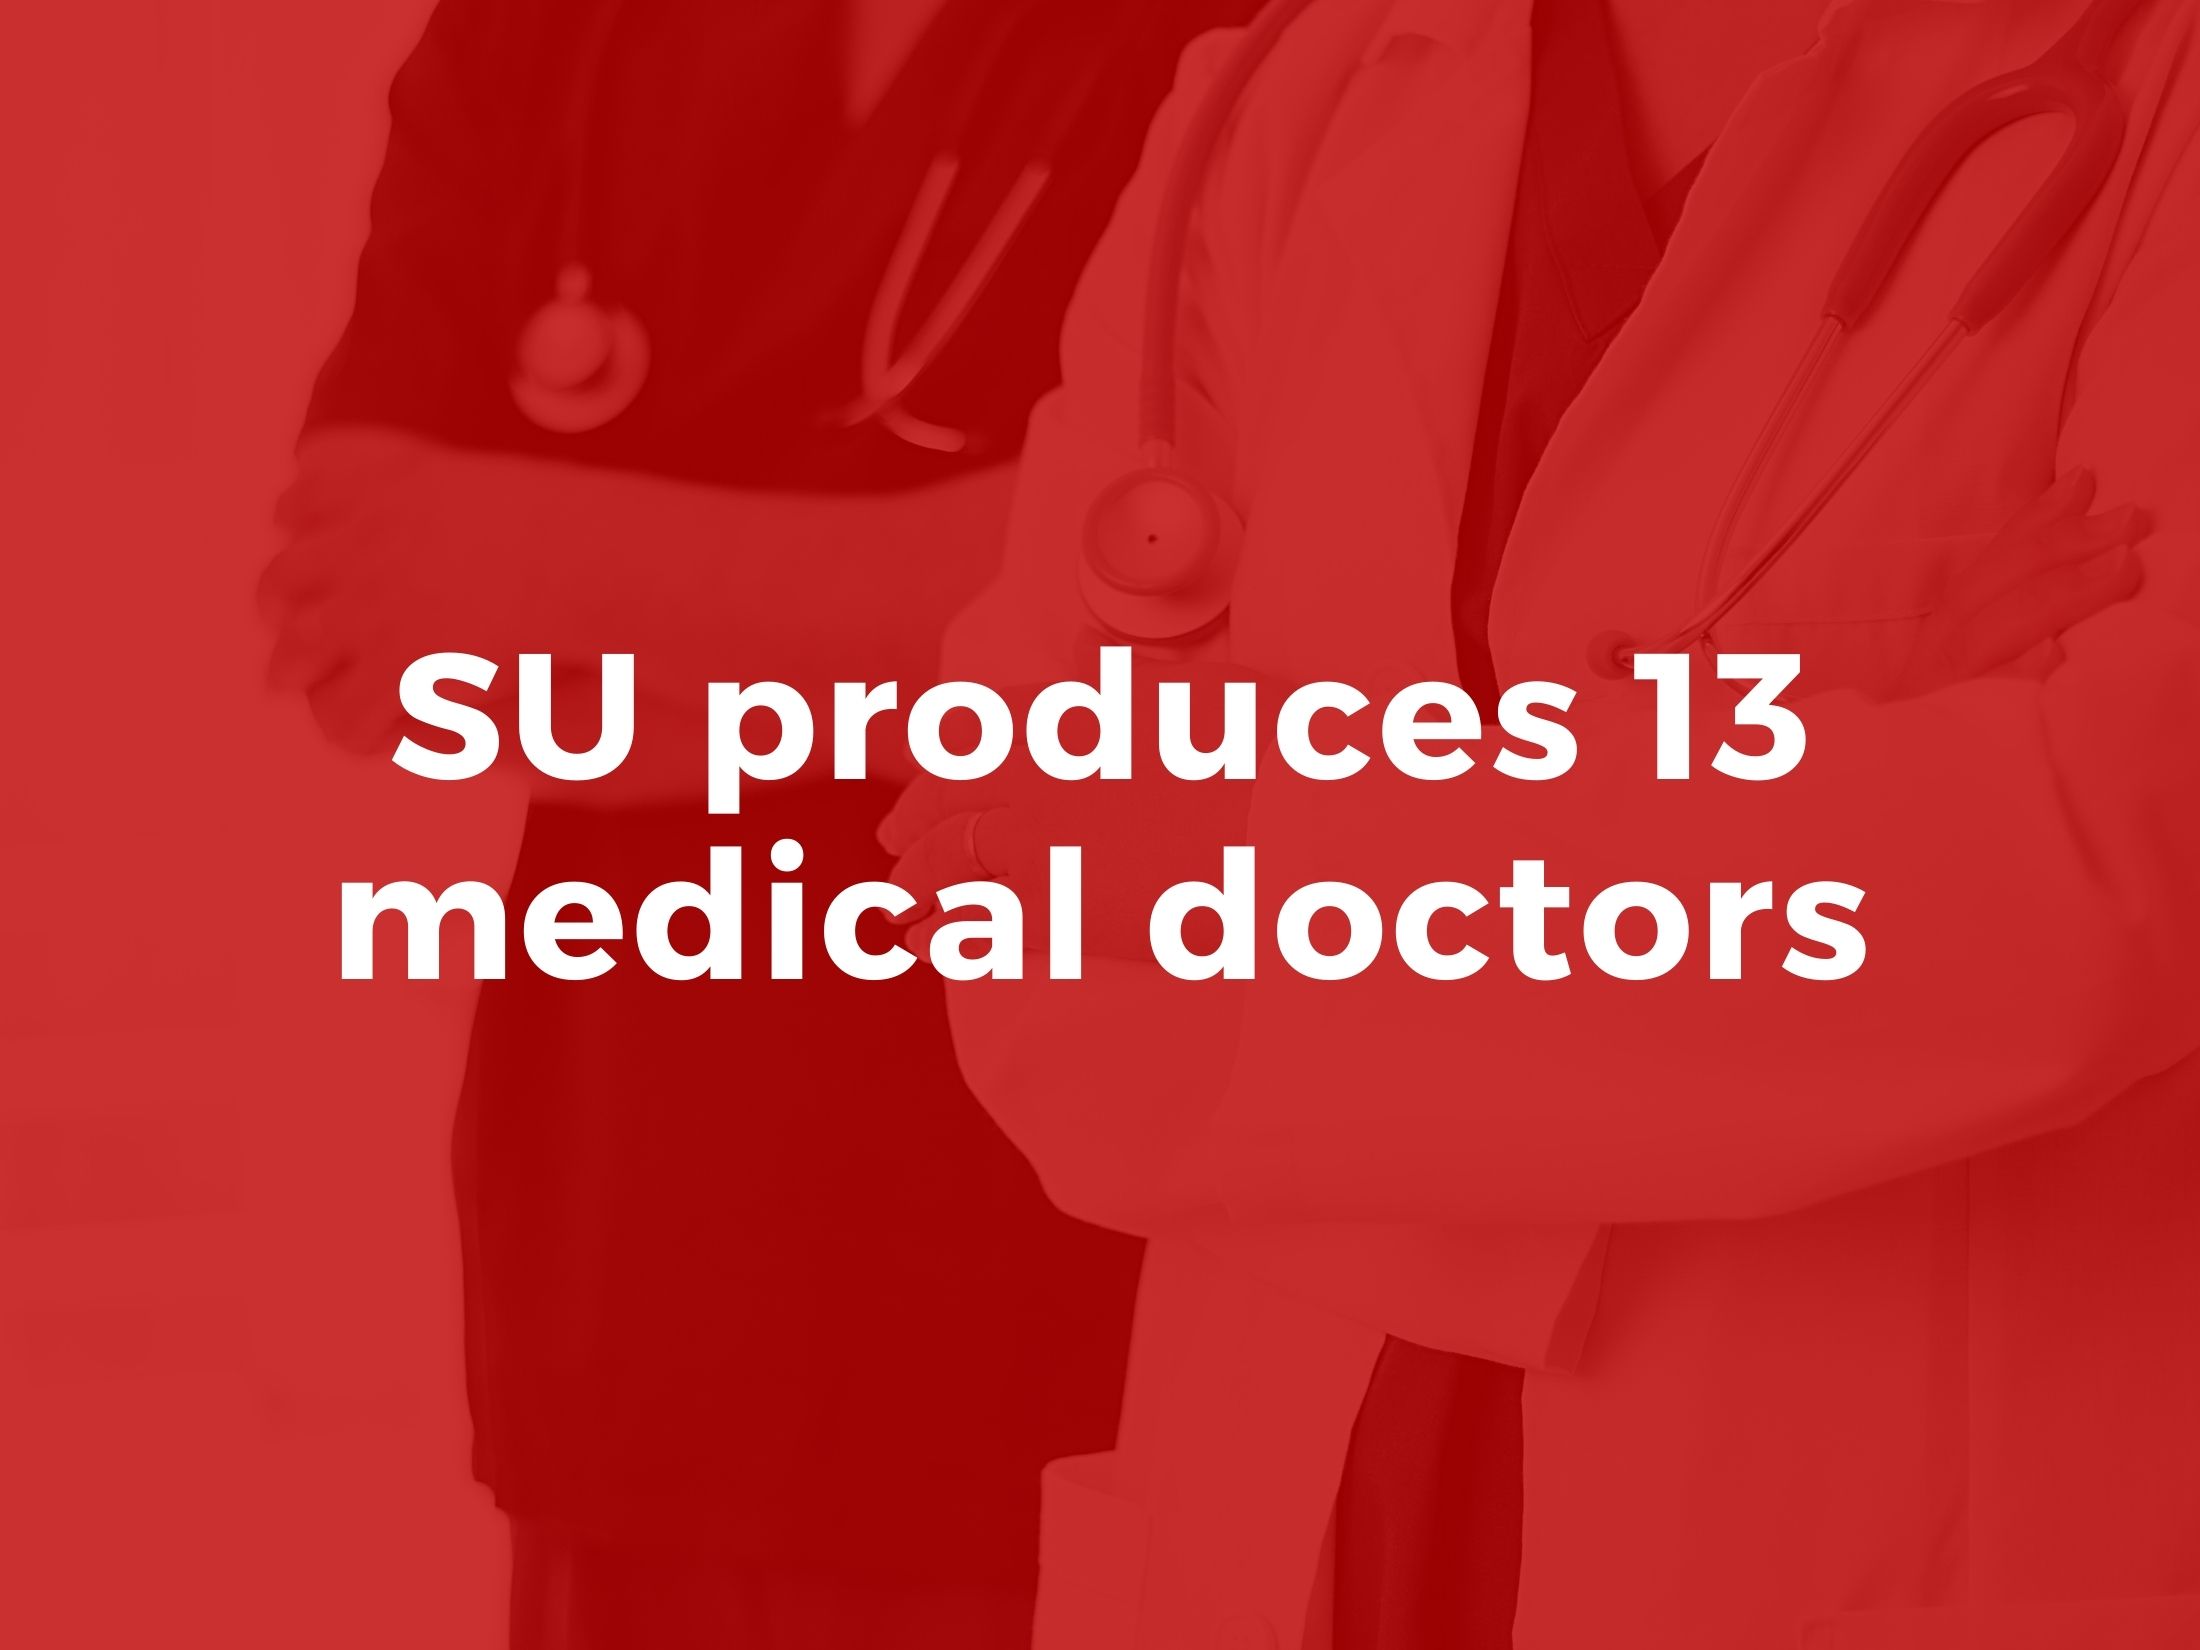 SU produces 13 medical doctors